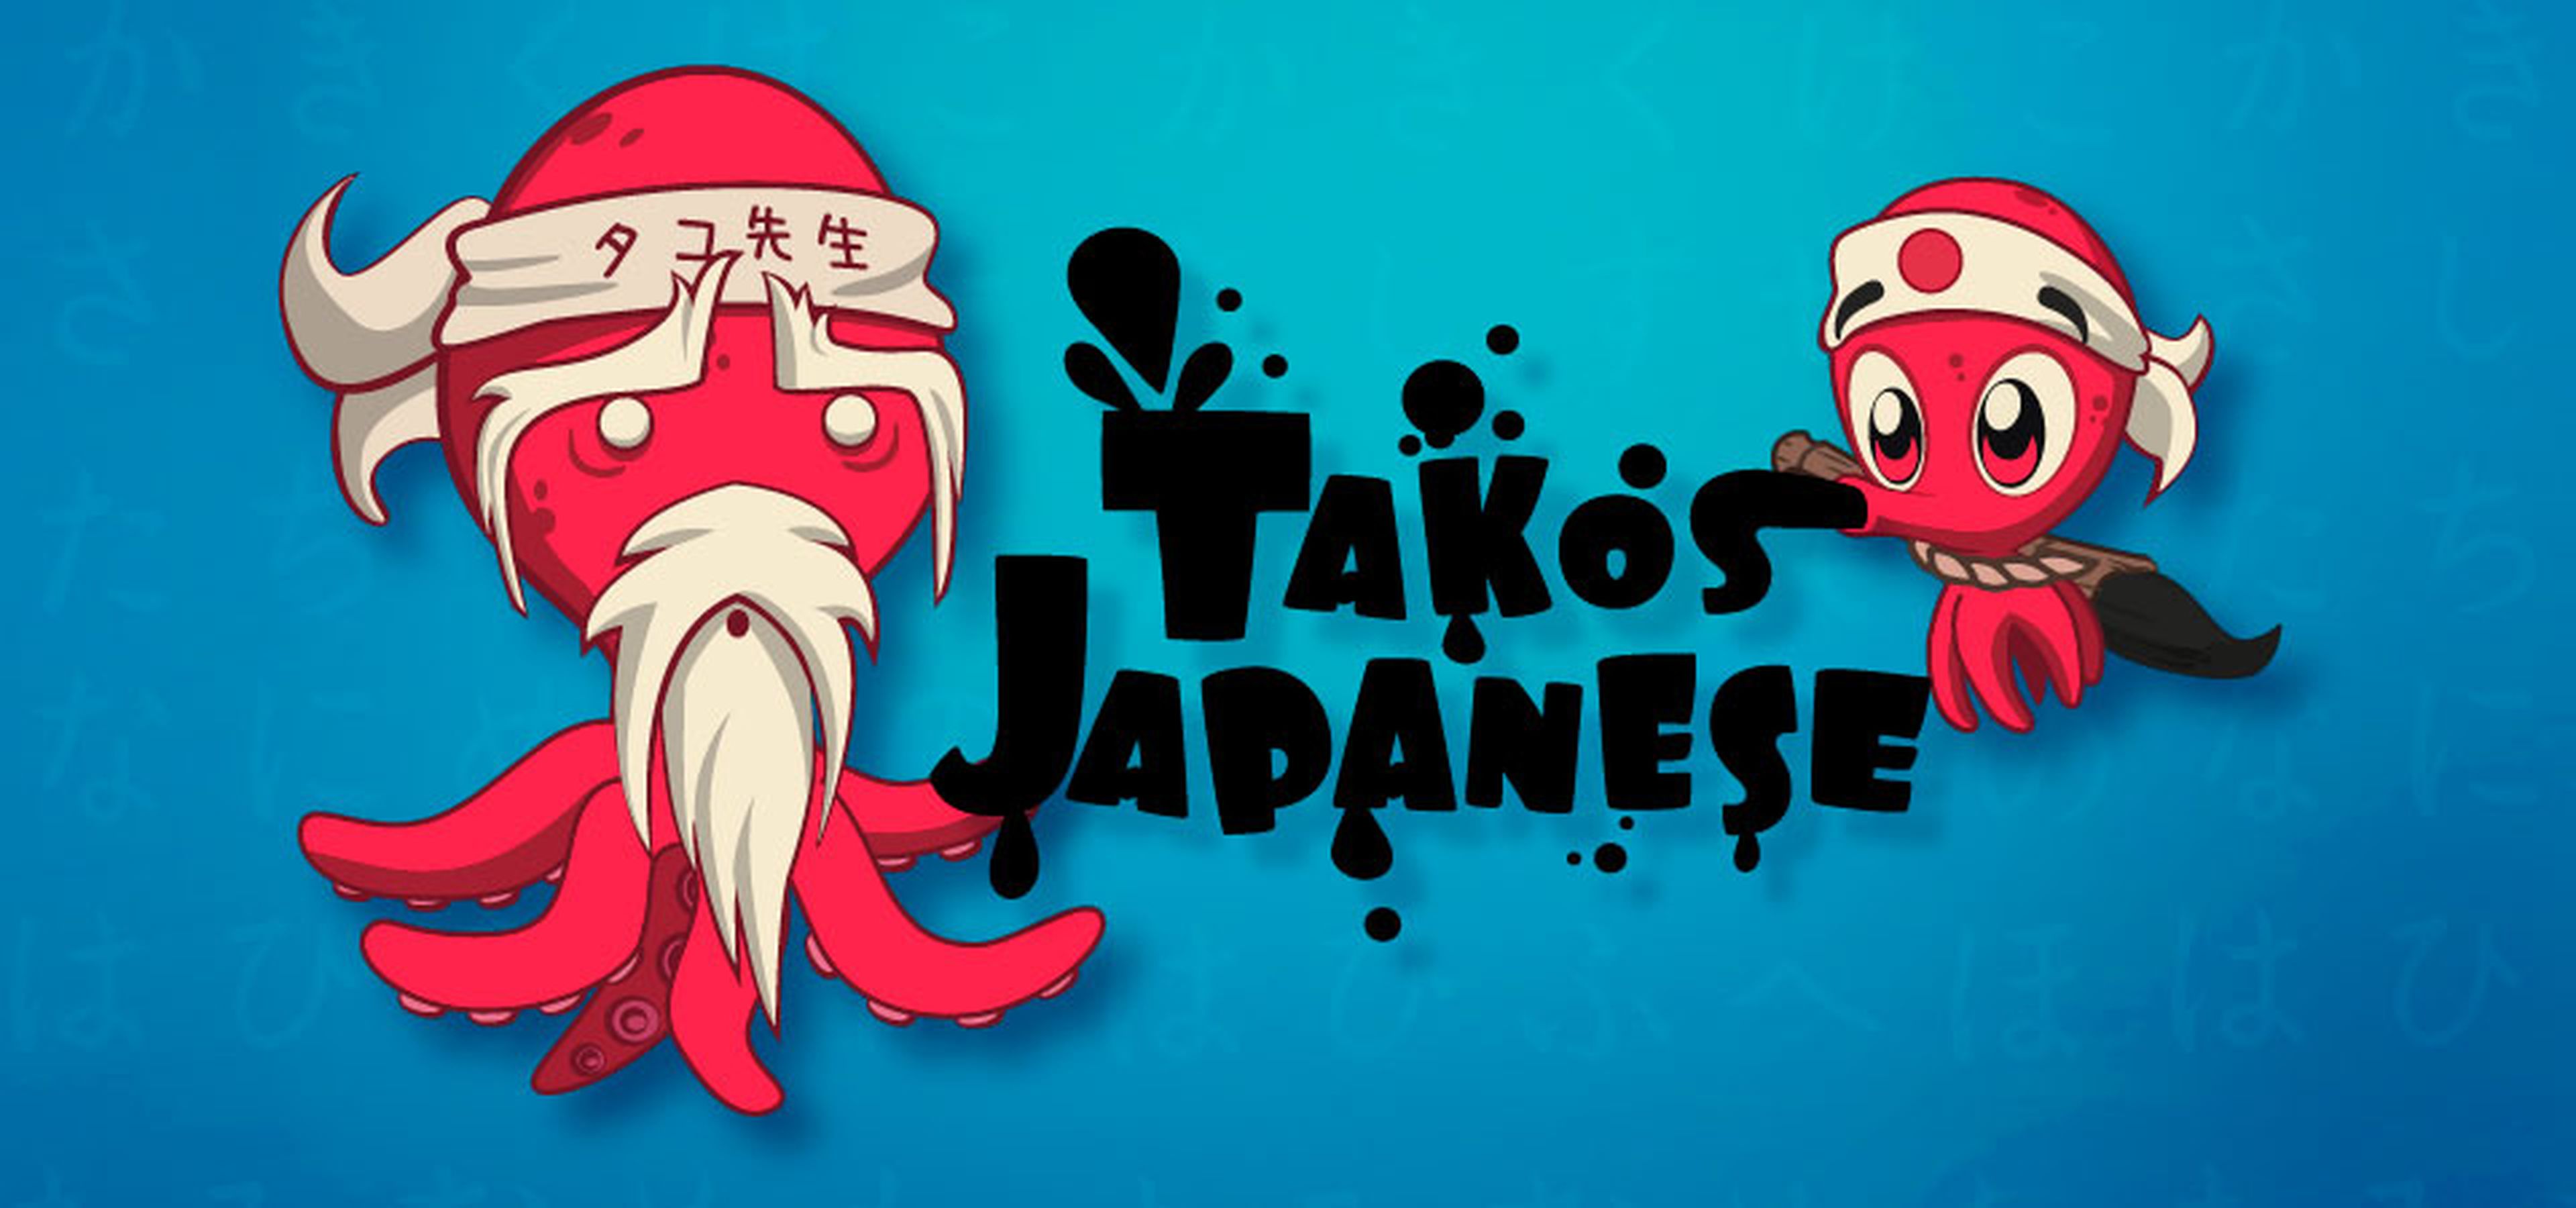 Takos Japanese